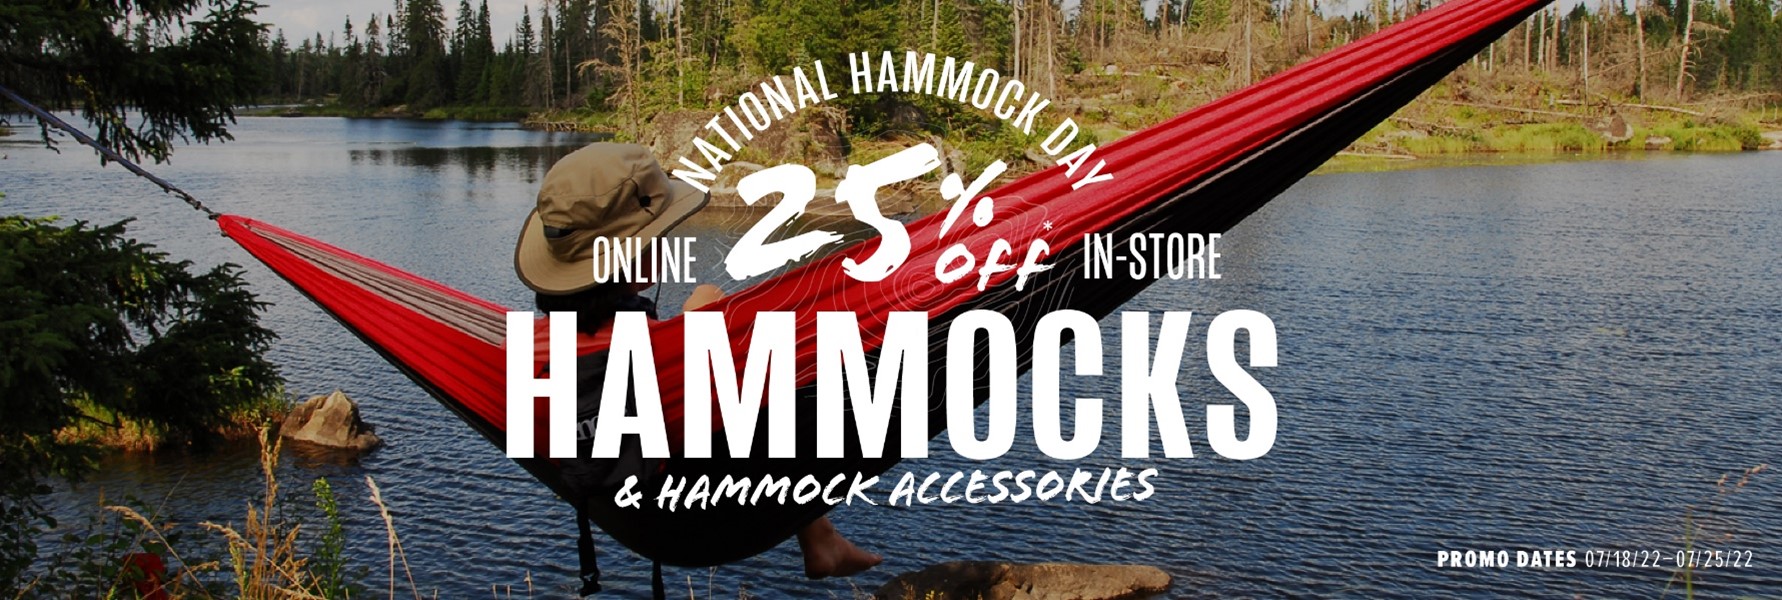 Hammocks 25% off